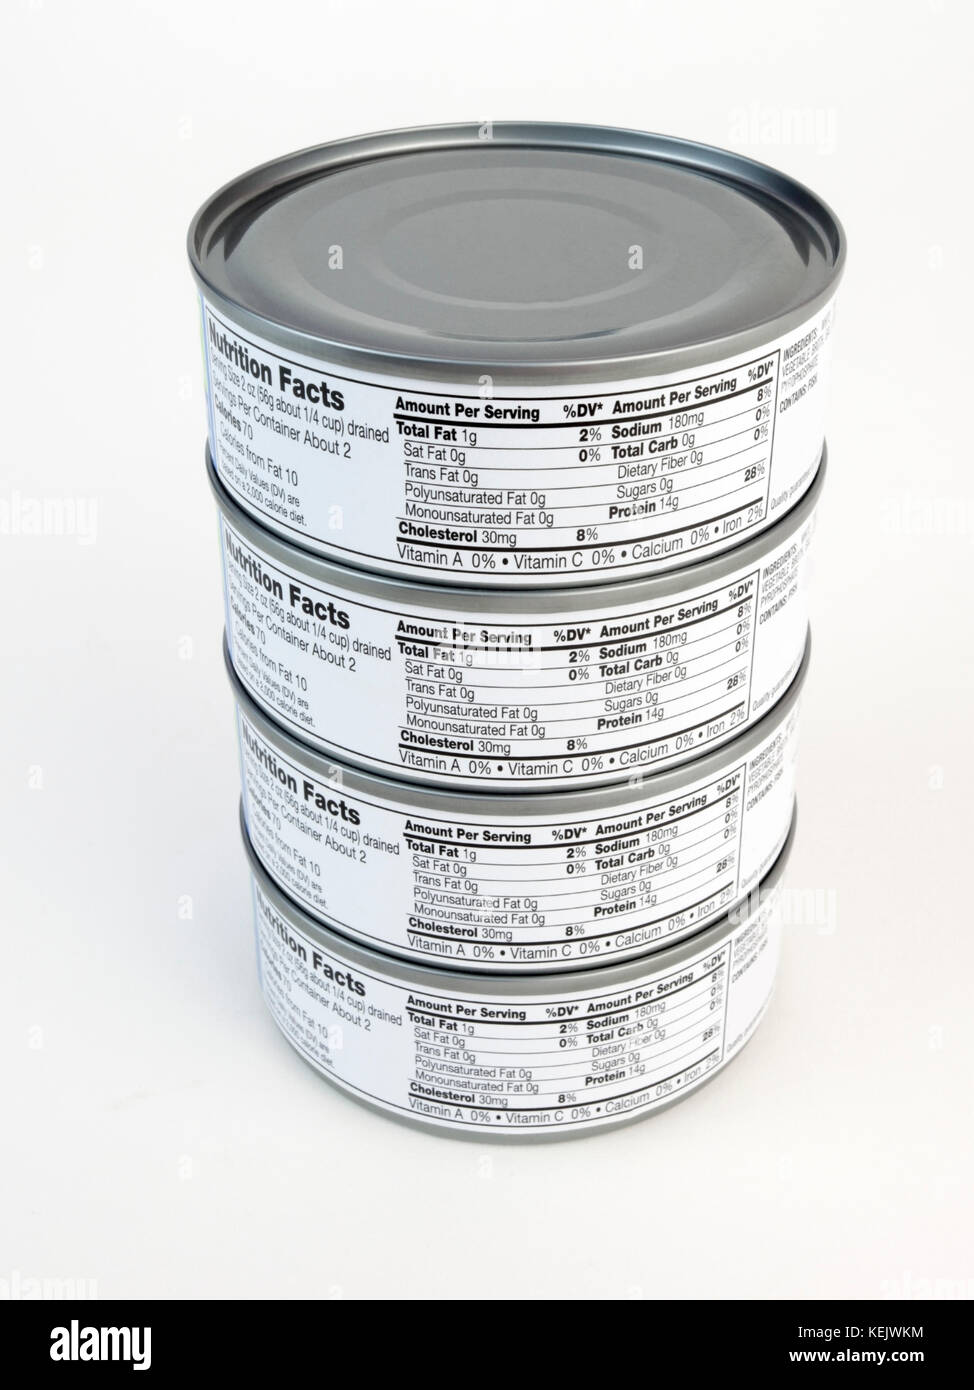 La pile de boîtes de thon avec l'information nutritionnelle sur l'étiquette. Banque D'Images